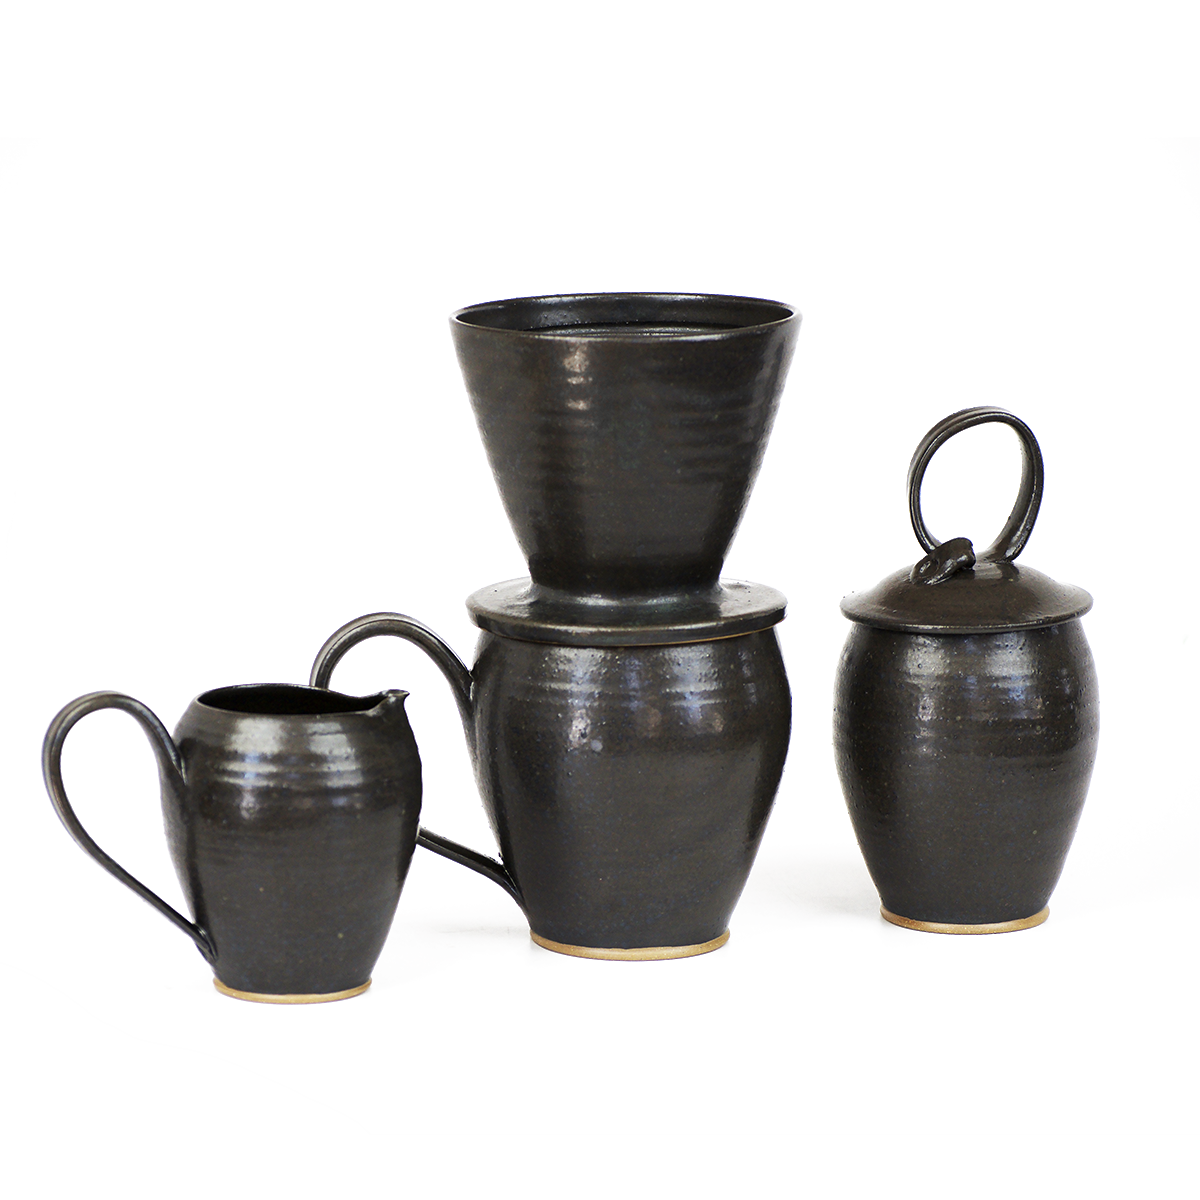 Pour-over with Black Ceramic Mug